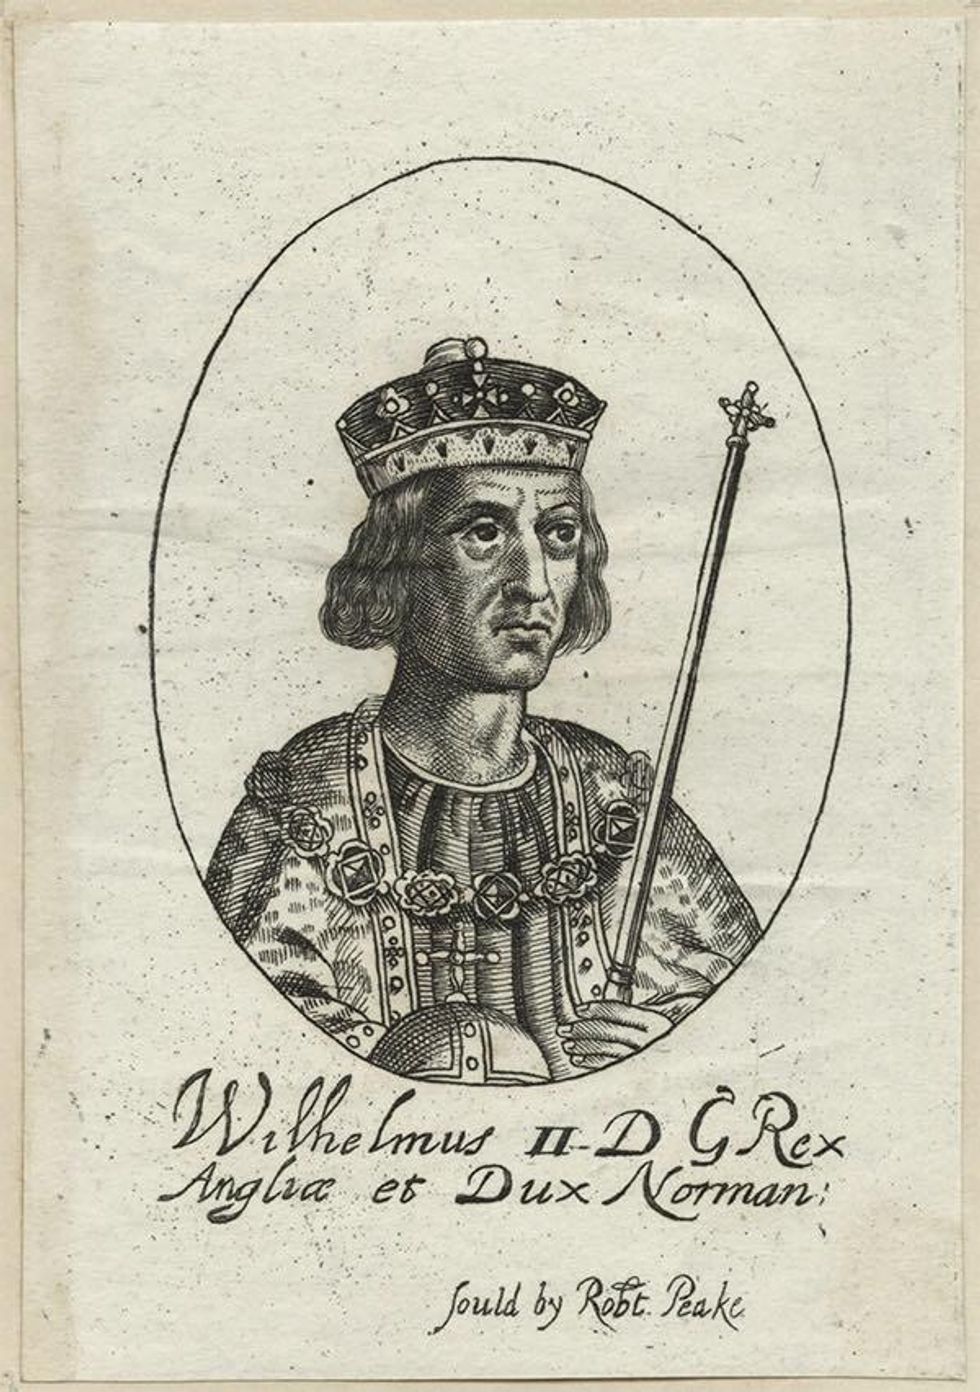 King William II William Rufus